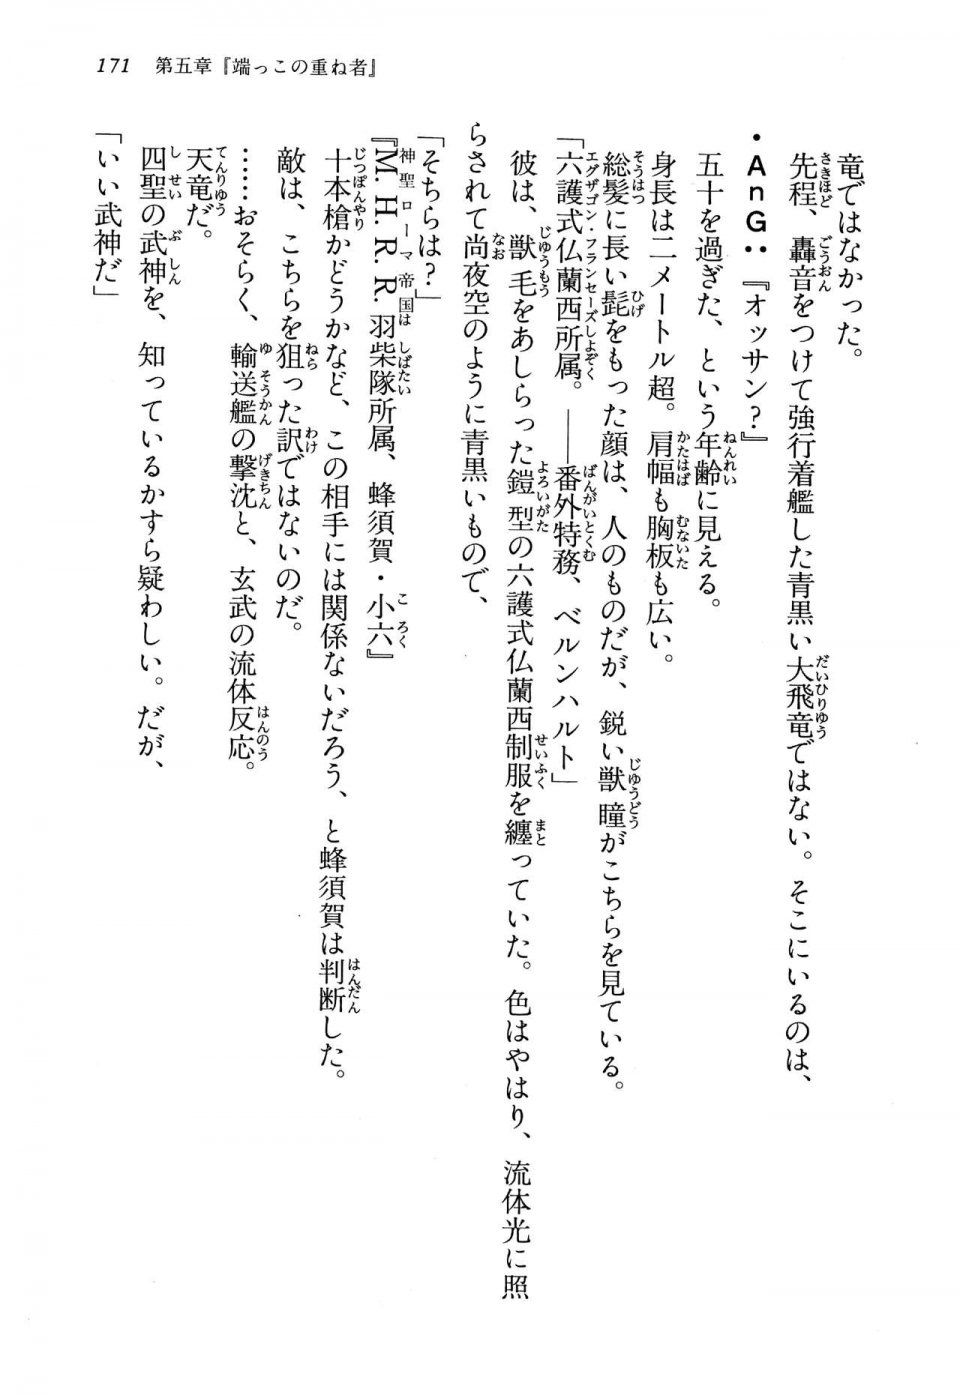 Kyoukai Senjou no Horizon LN Vol 13(6A) - Photo #171